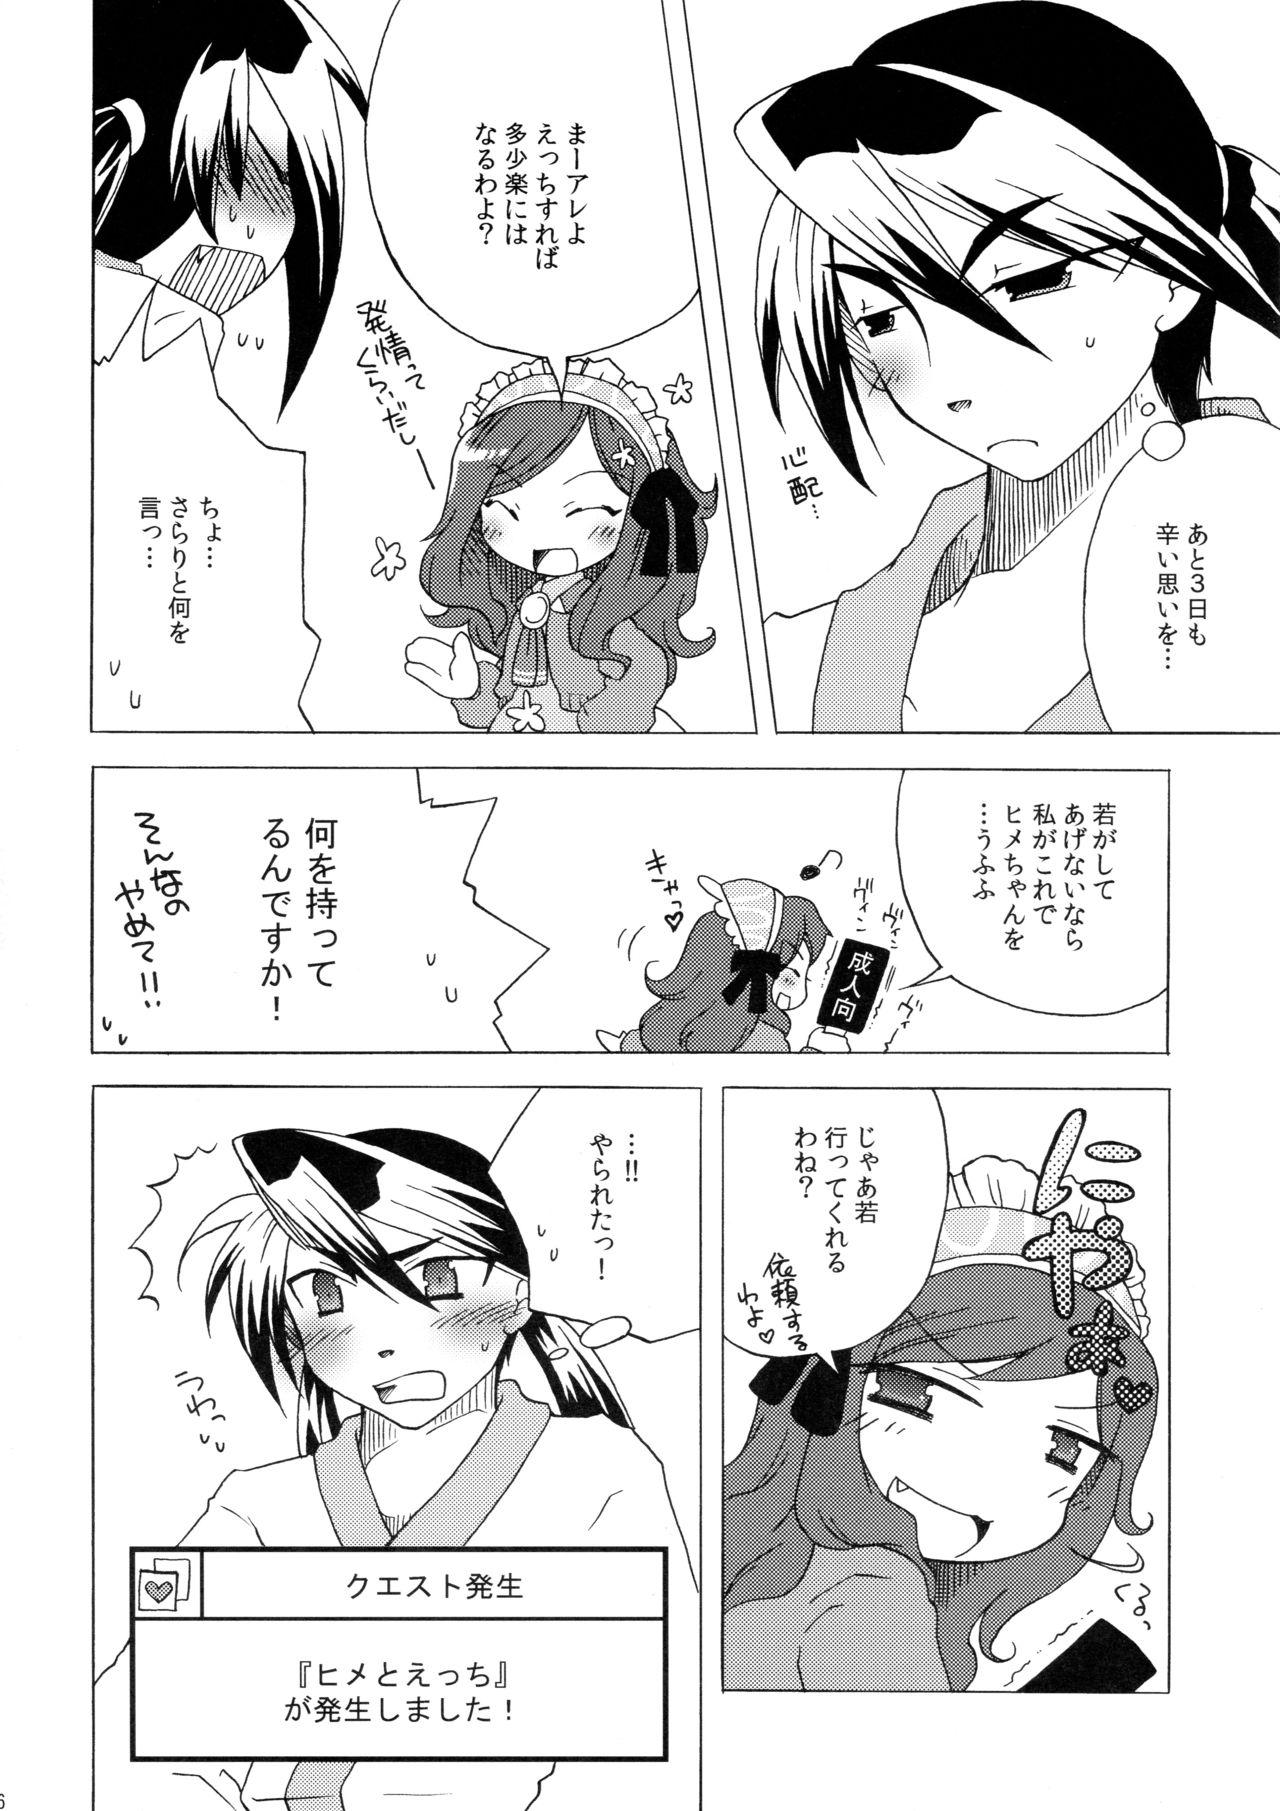 Real Waka Utsu no Hajimete. - 7th dragon Cute - Page 6